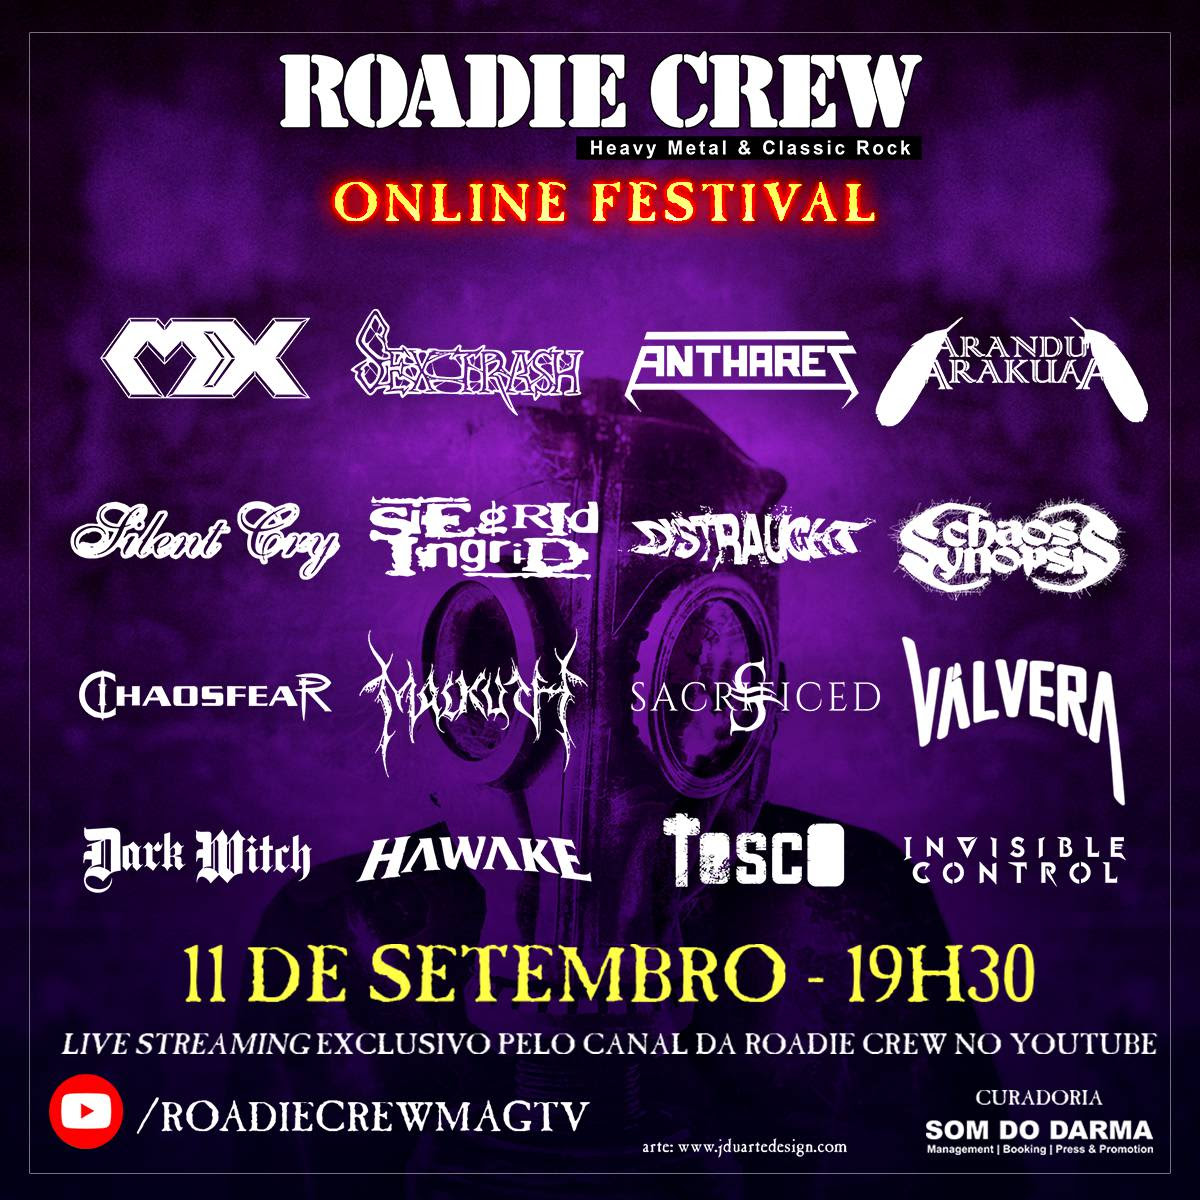 MX, SEXTRASH e ANTHARES são bandas do “Roadie Crew – Online Festival”